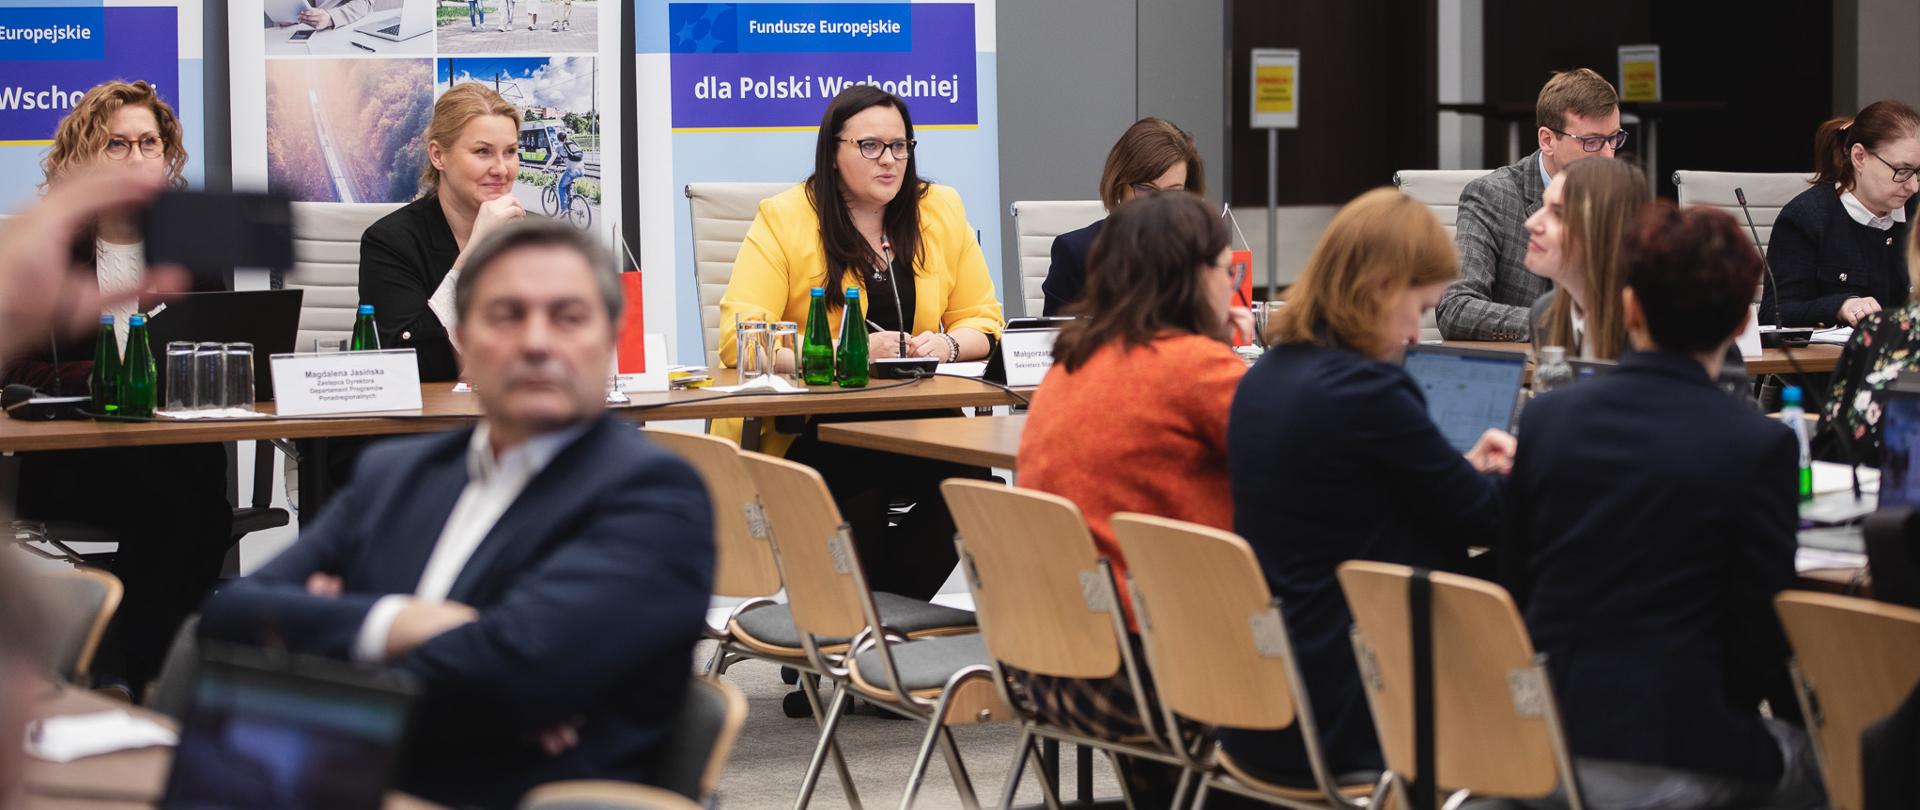 Grupa osób siedzi przy stołach w sali konferencyjnej. Na tle banerów wiceminister Małgorzata Jarosińska-Jedynak.